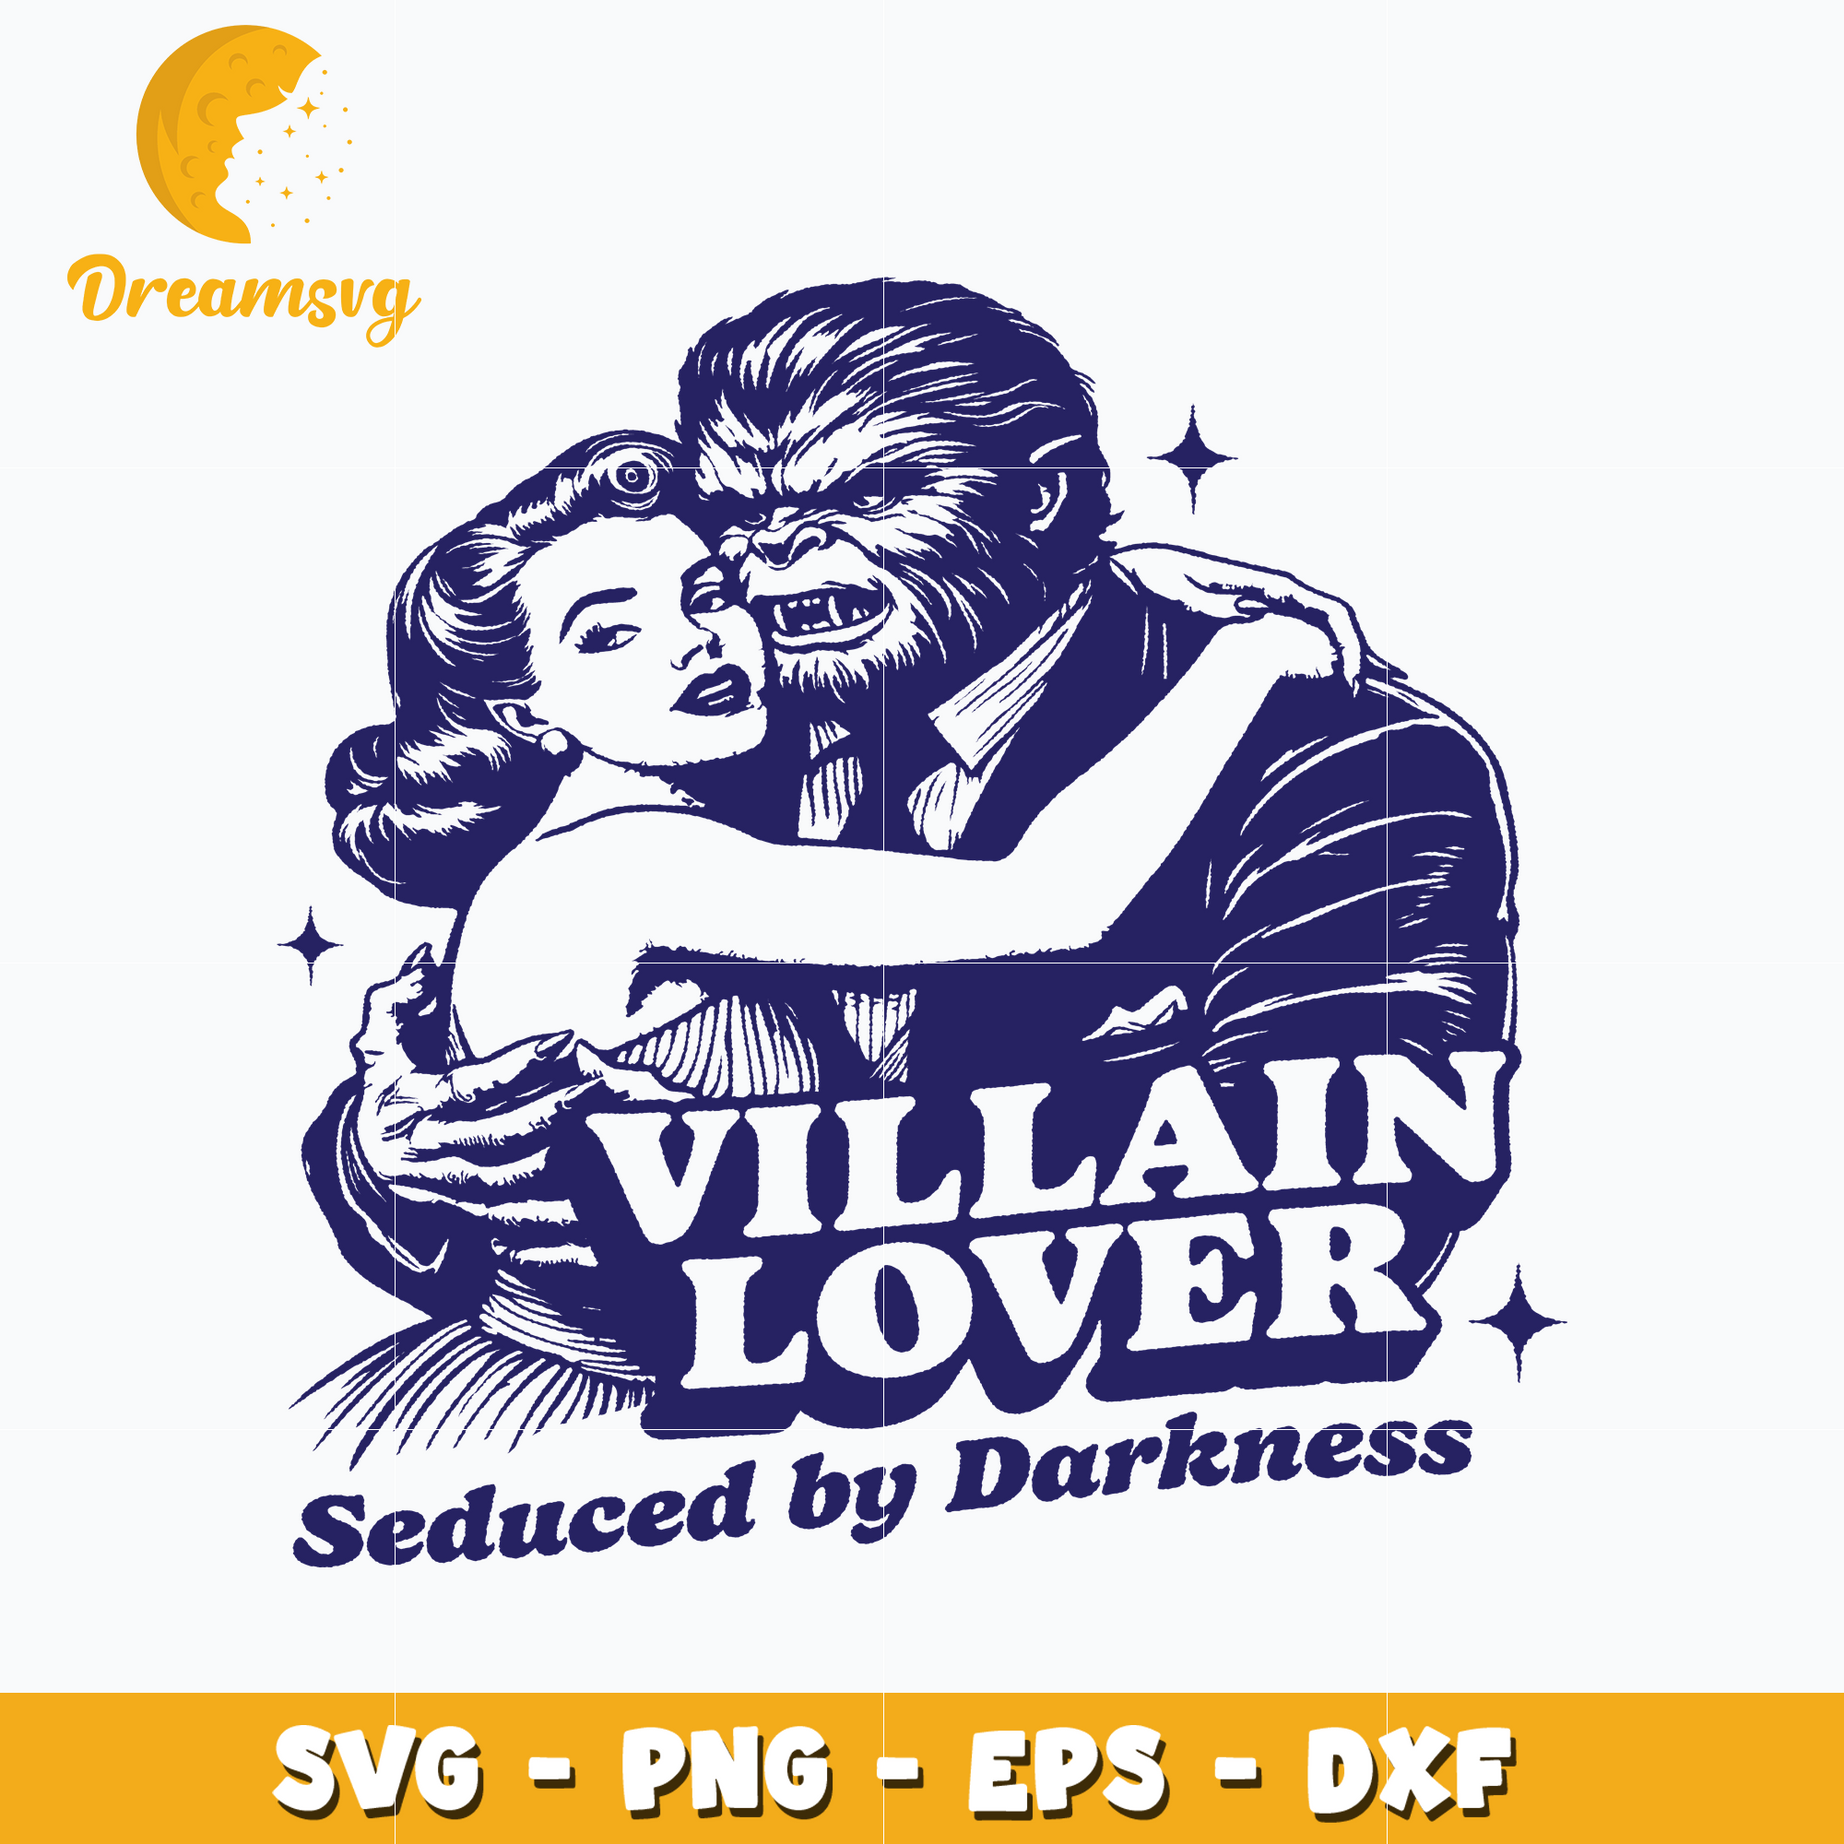 Villain lover seduced by darkness SVG